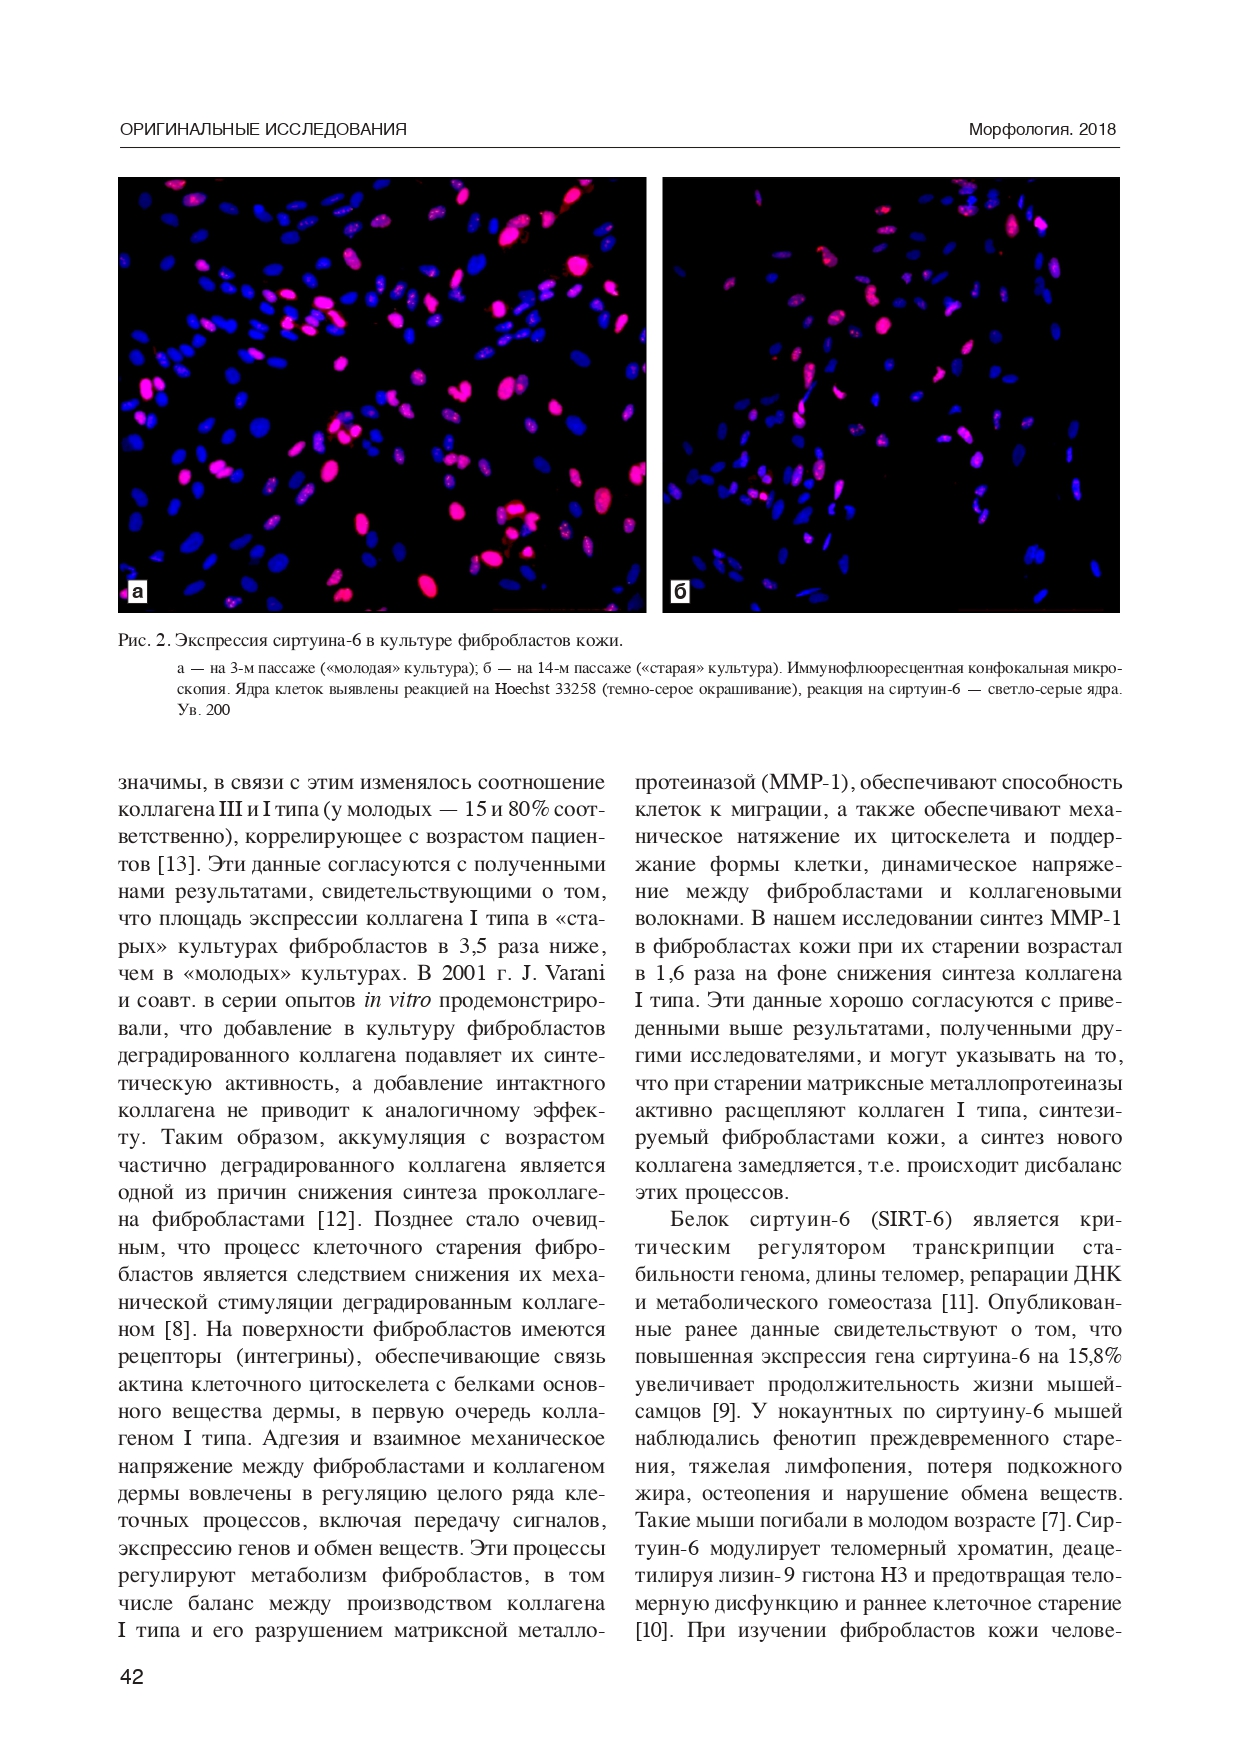 Экспрессия коллагена I типа, сиртуина-6 и матриксной металлопротеиназы-1 в фибропластах кожи человека в процессе длительного культивирования